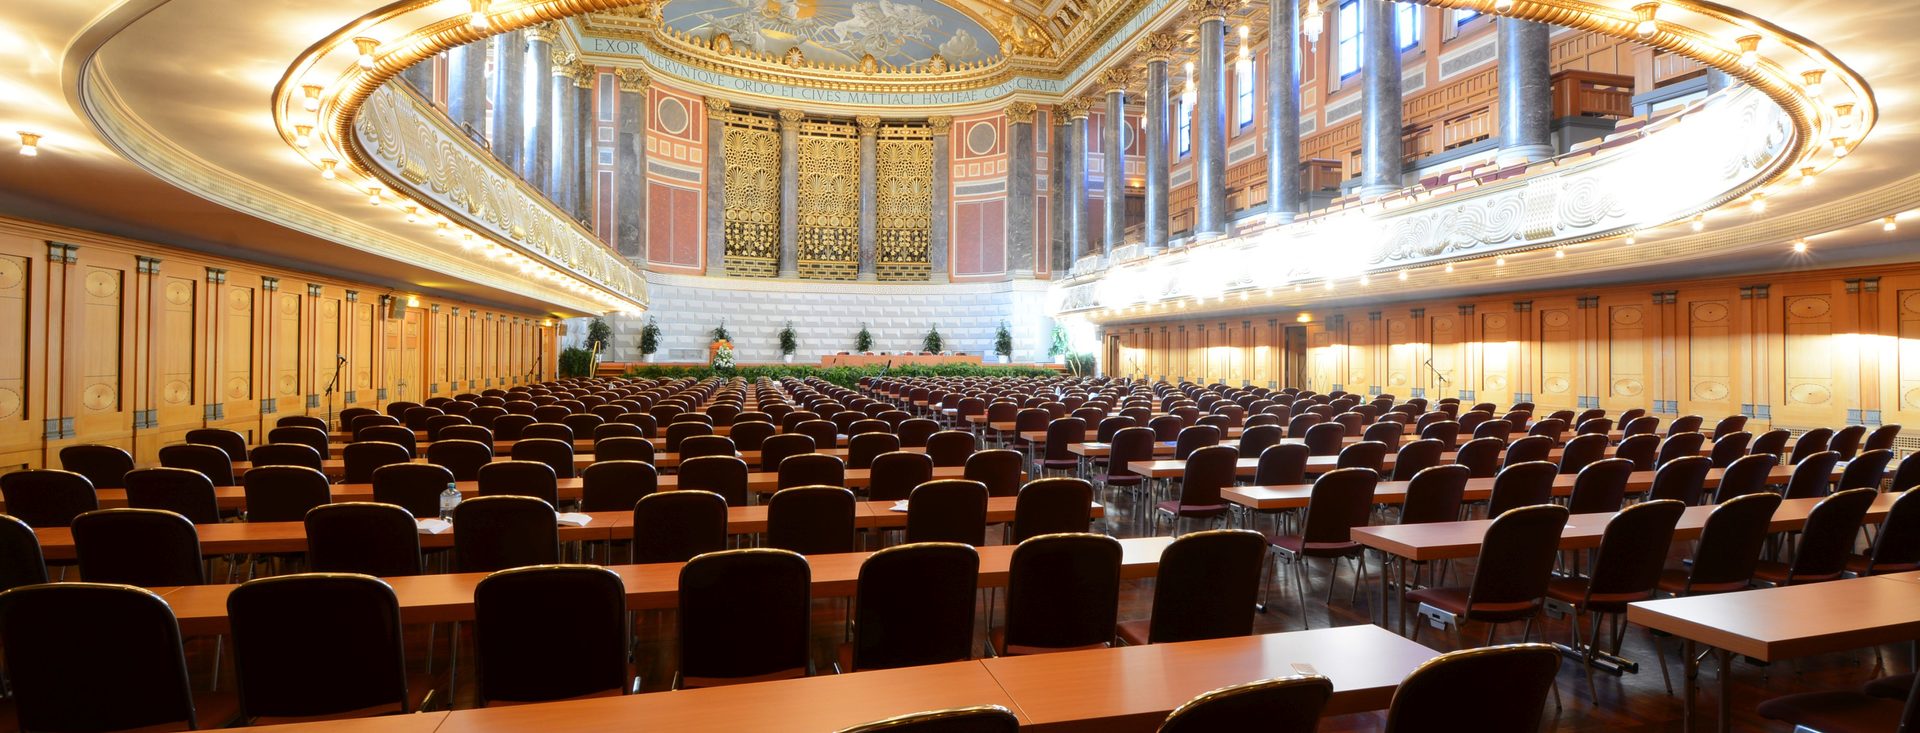 Friedrich-von-Thiersch-Saal Kurhaus - parlamentarische Bestuhlung im Parkett mit Blick zur Bühne